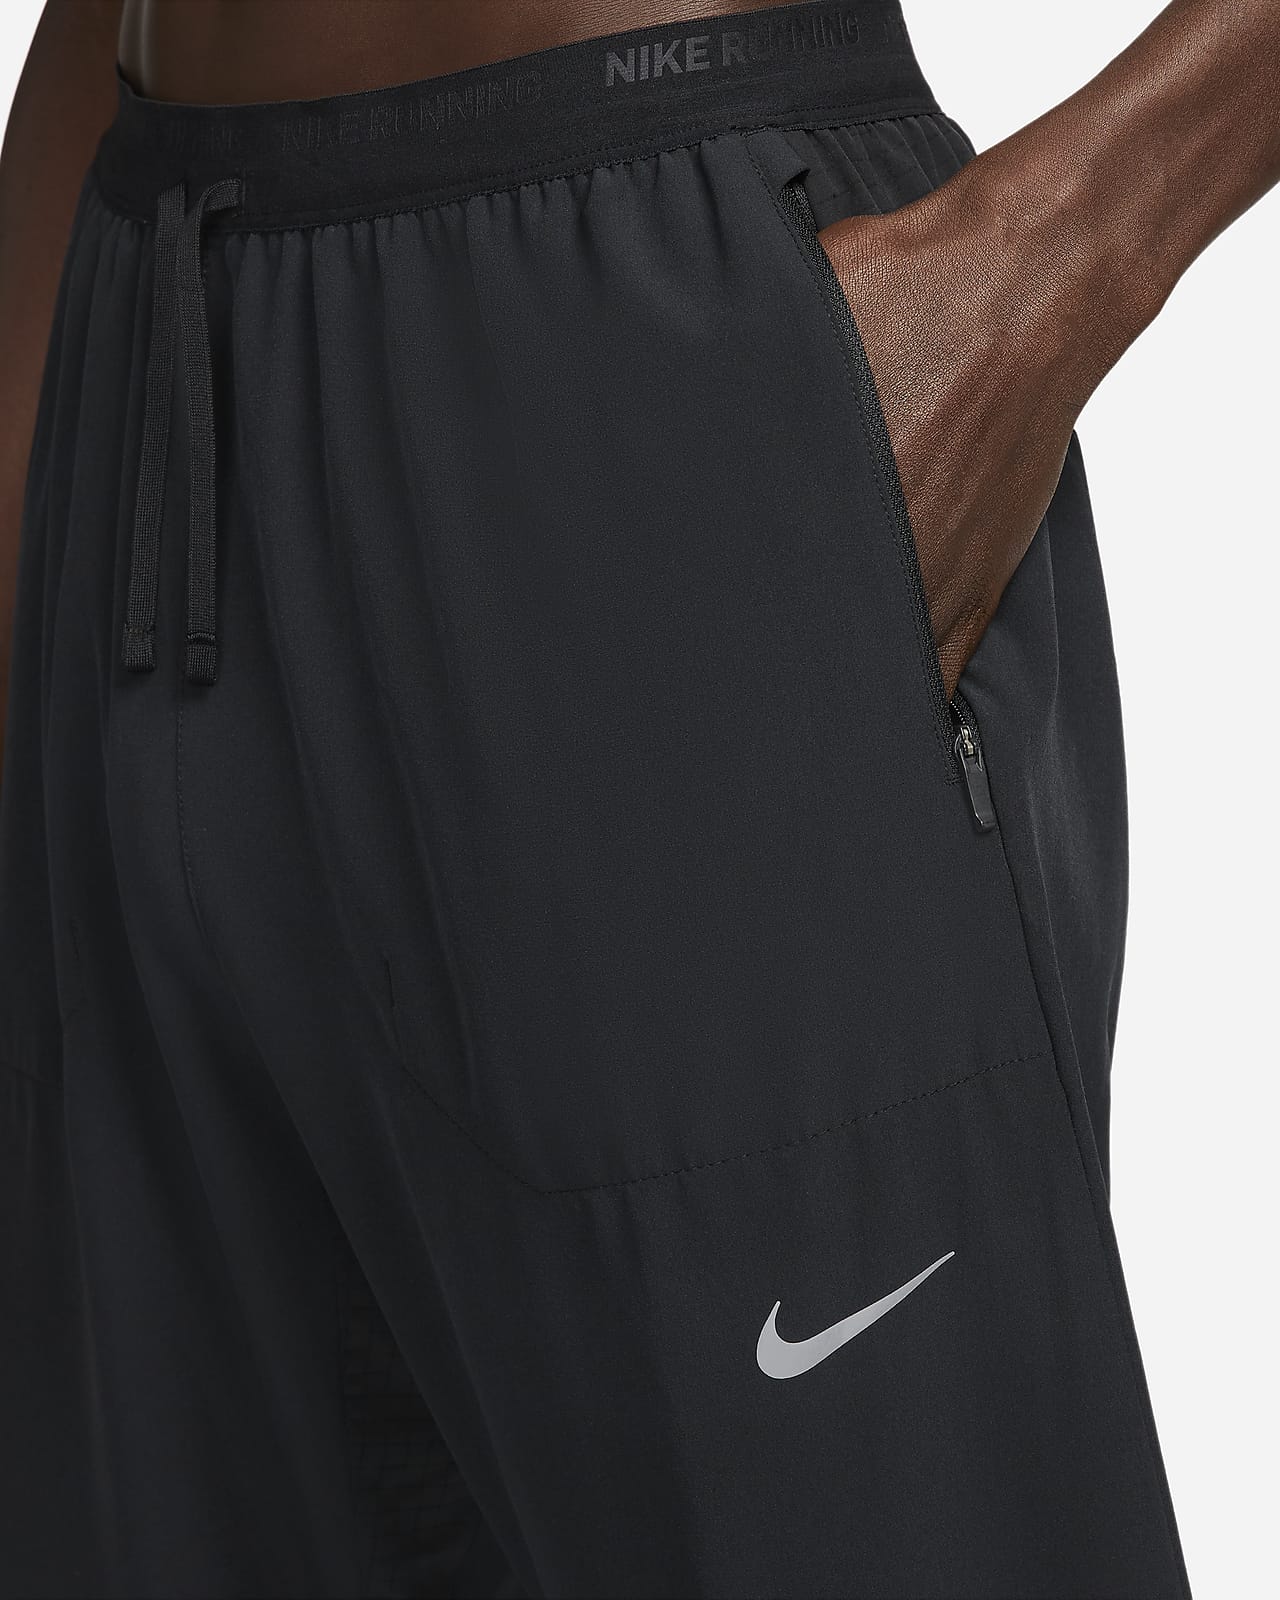 Nike | Pants | Nike Nsw Vaporwave Nylon Track Pant Mens Medium Black Hot  Pink Retro Jogger | Poshmark